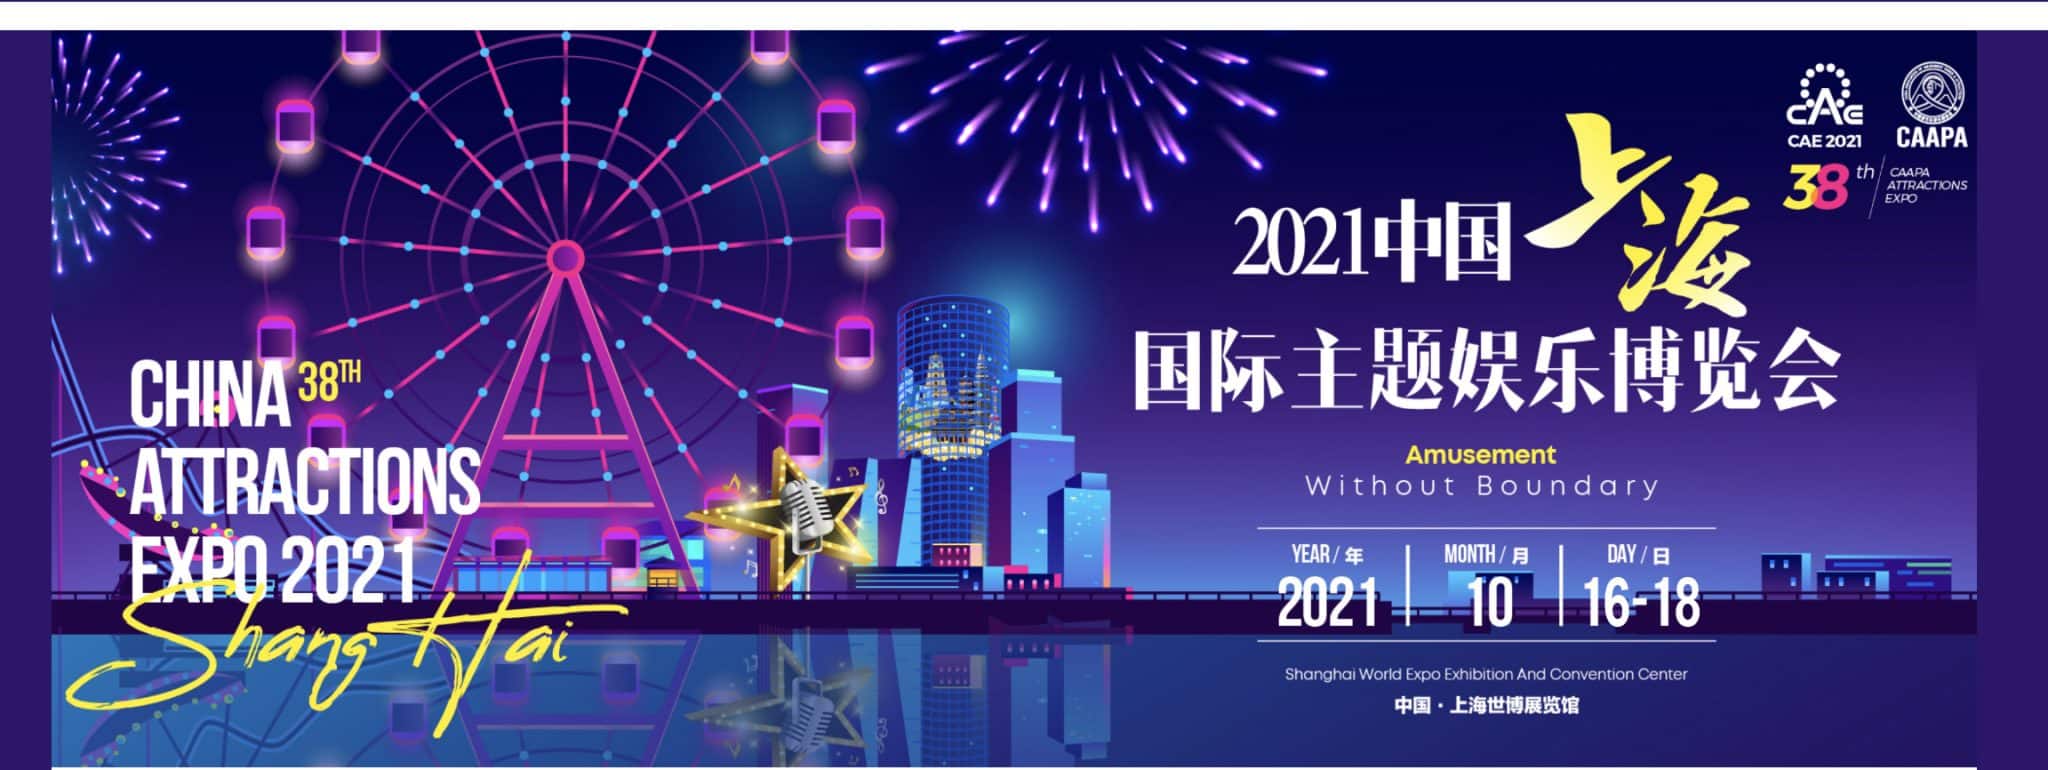 CAE Shanghai 2021